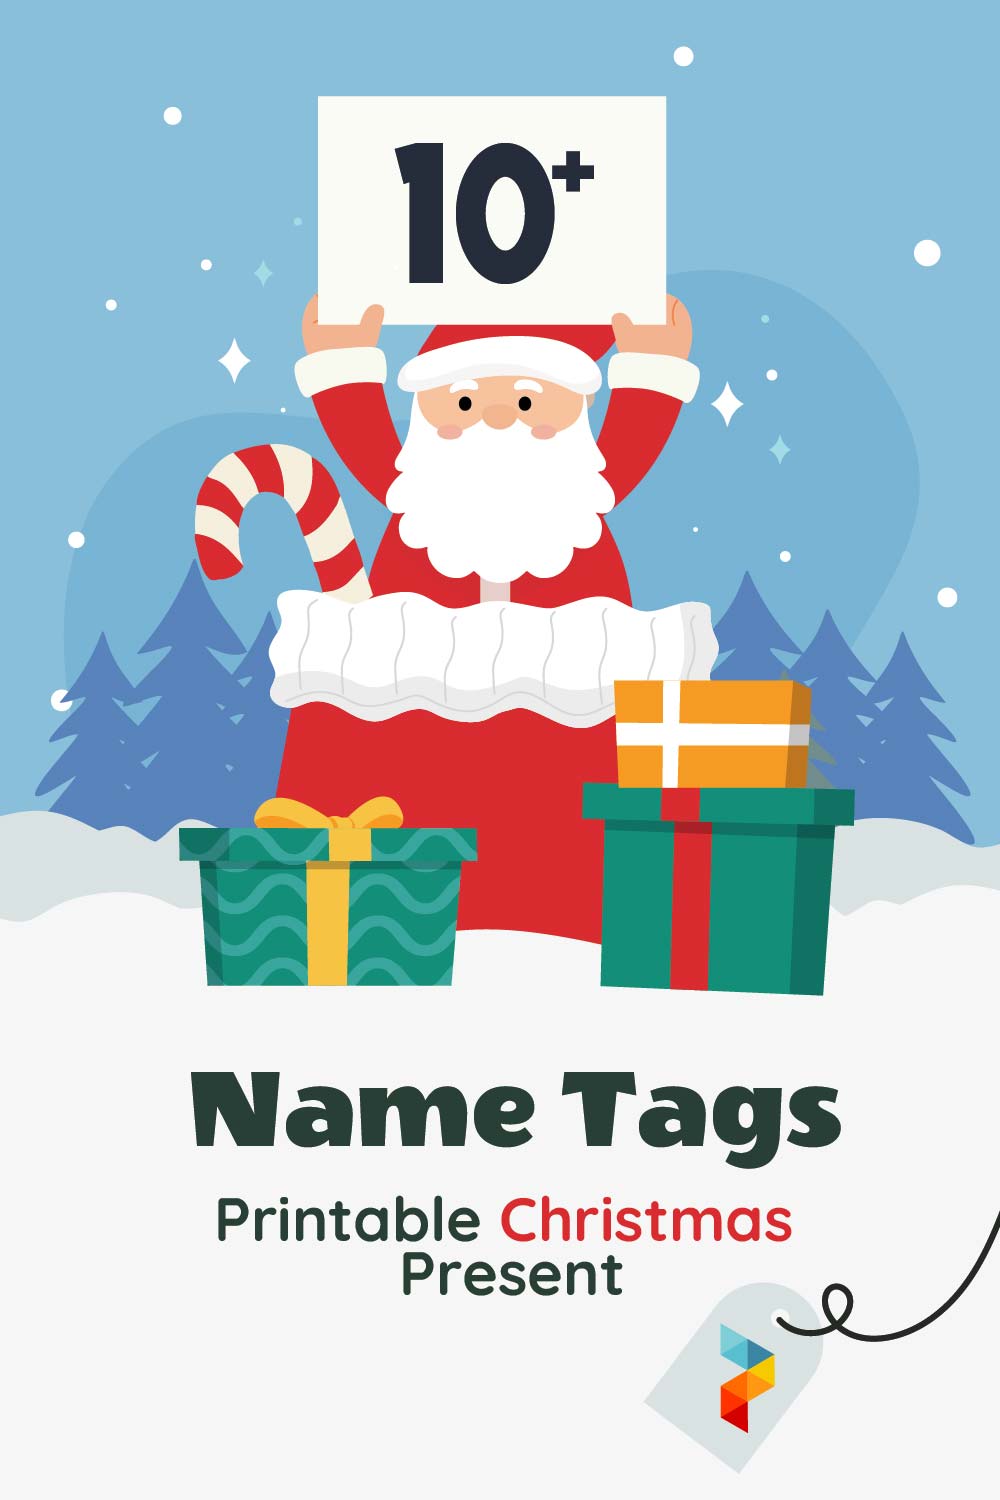 Name Tags Printable Christmas Present